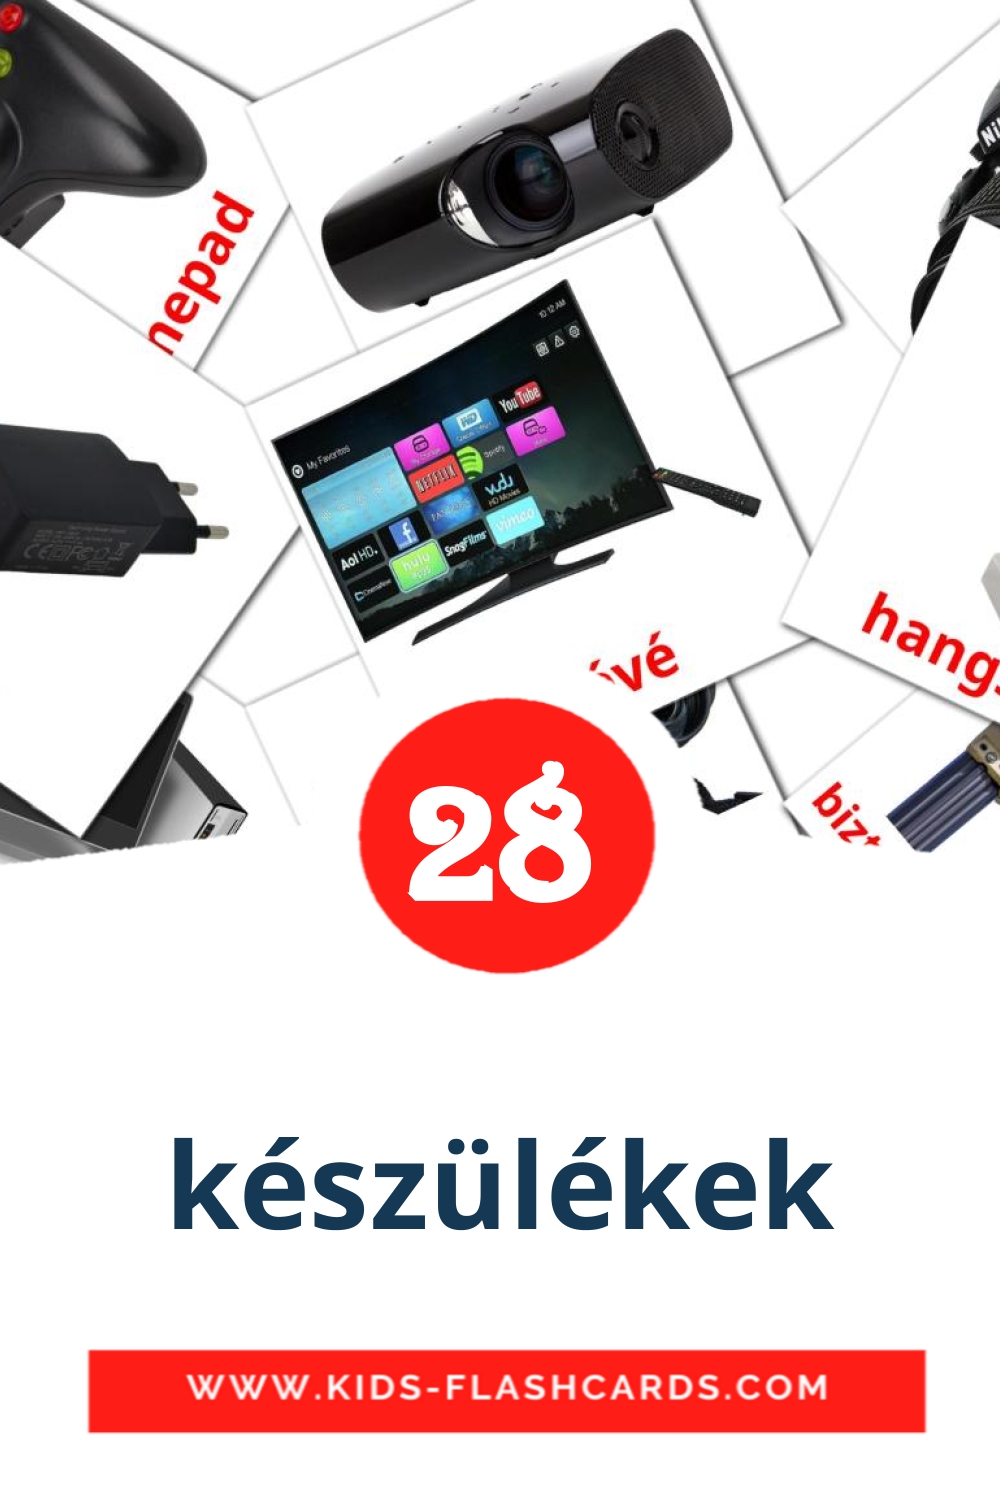 28 carte illustrate di készülékek per la scuola materna in ungherese